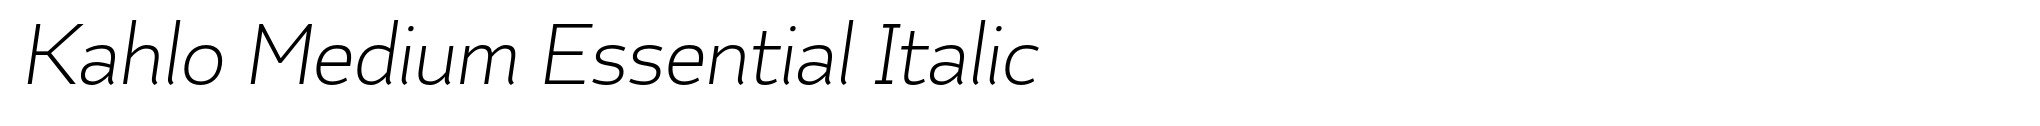 Kahlo Medium Essential Italic image